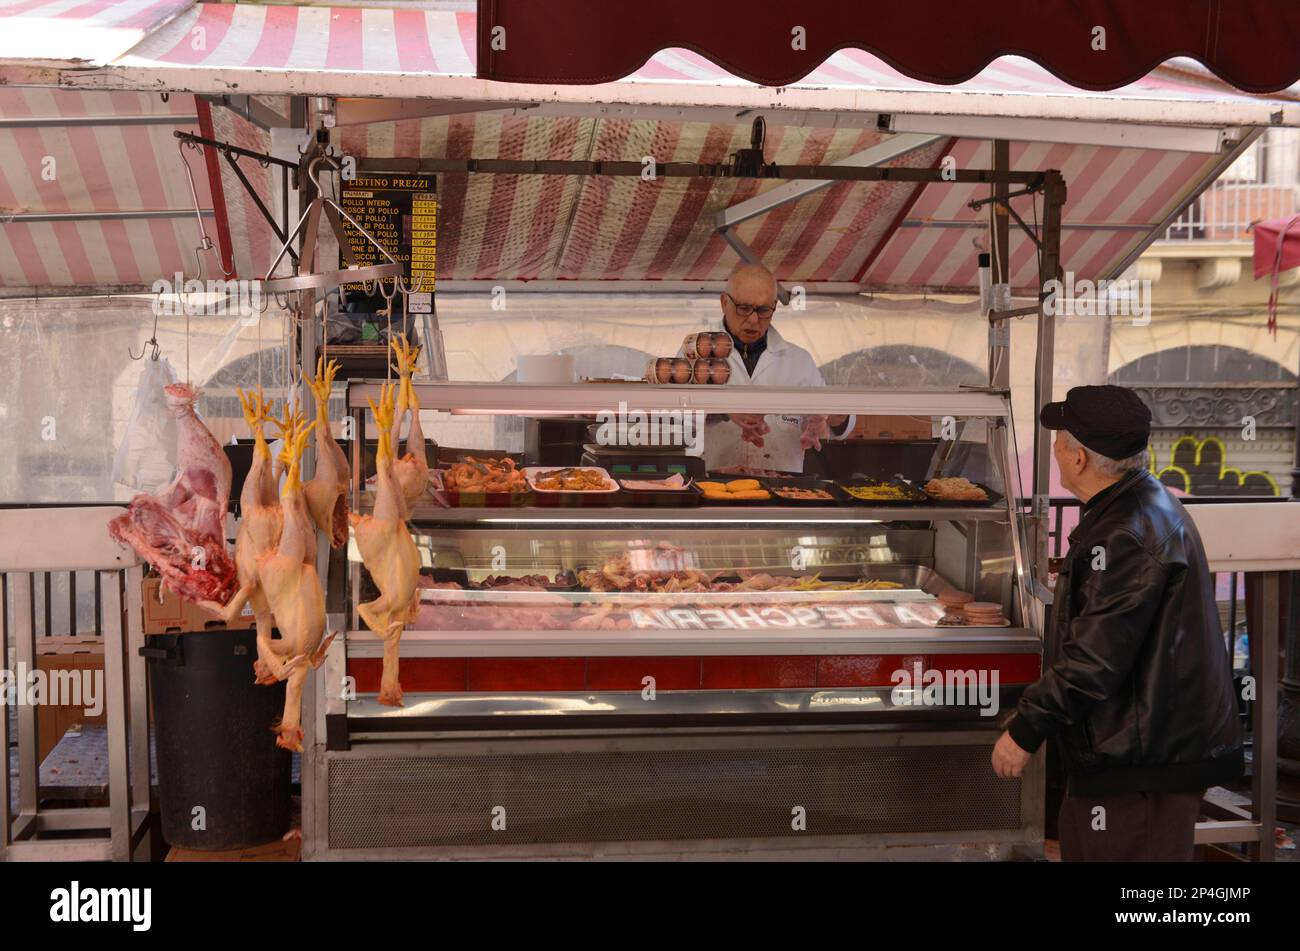 Poultry, fish market, Piazza Alonzo di Benedetto, Catania, Sicily, Italy Stock Photo